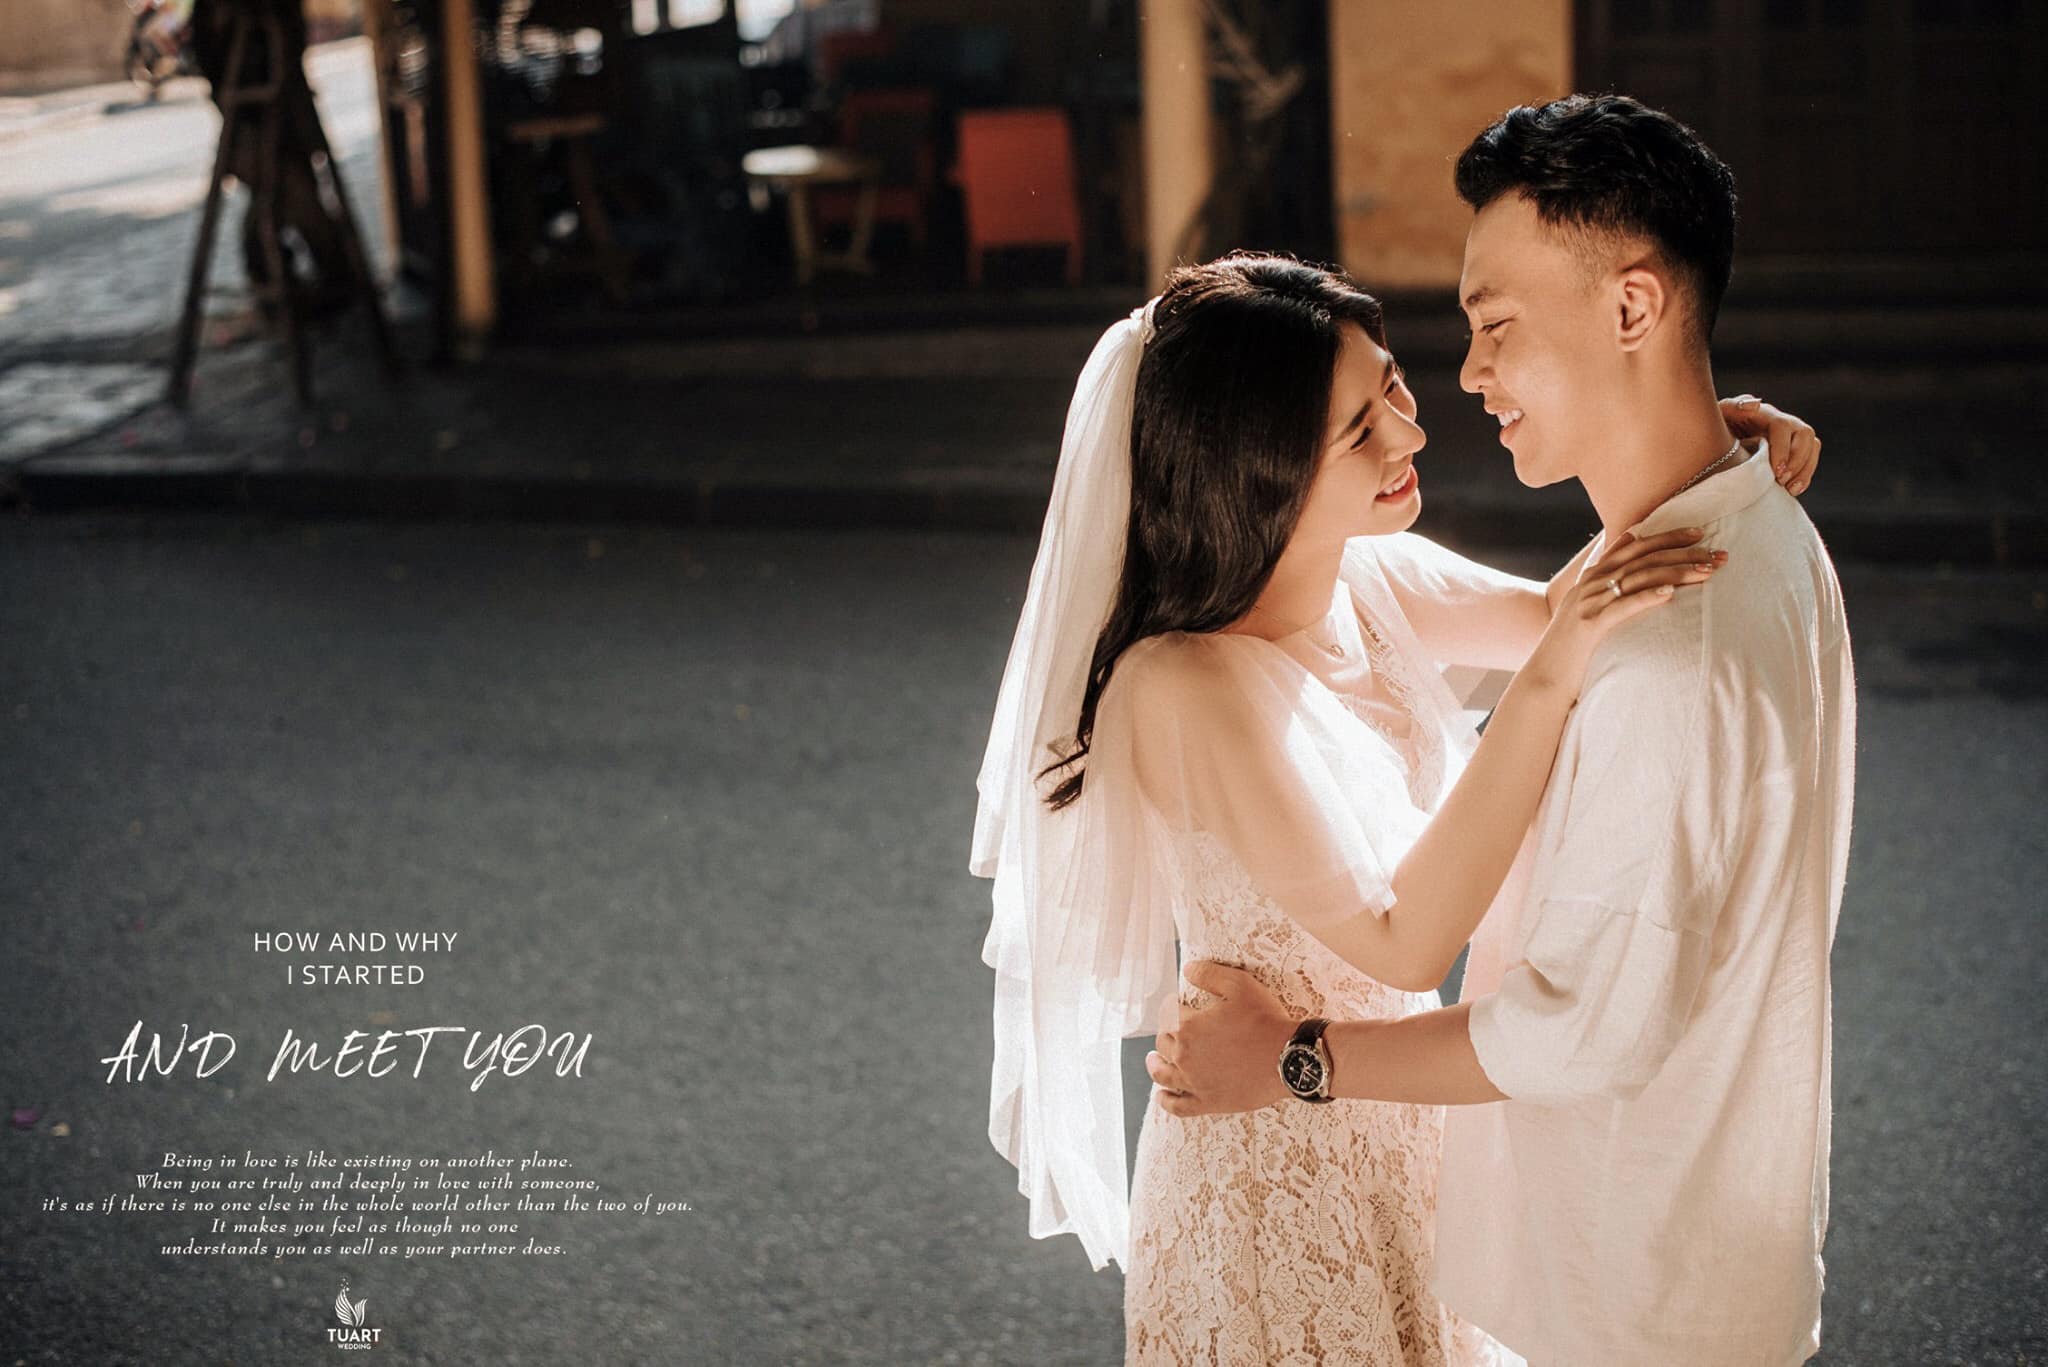 5 Cách Chọn Trang Phục Tự Do Khi Chụp Ảnh Cưới - Tuart Wedding - Studio  Chụp Ảnh Cưới Hàng Đầu Việt Nam